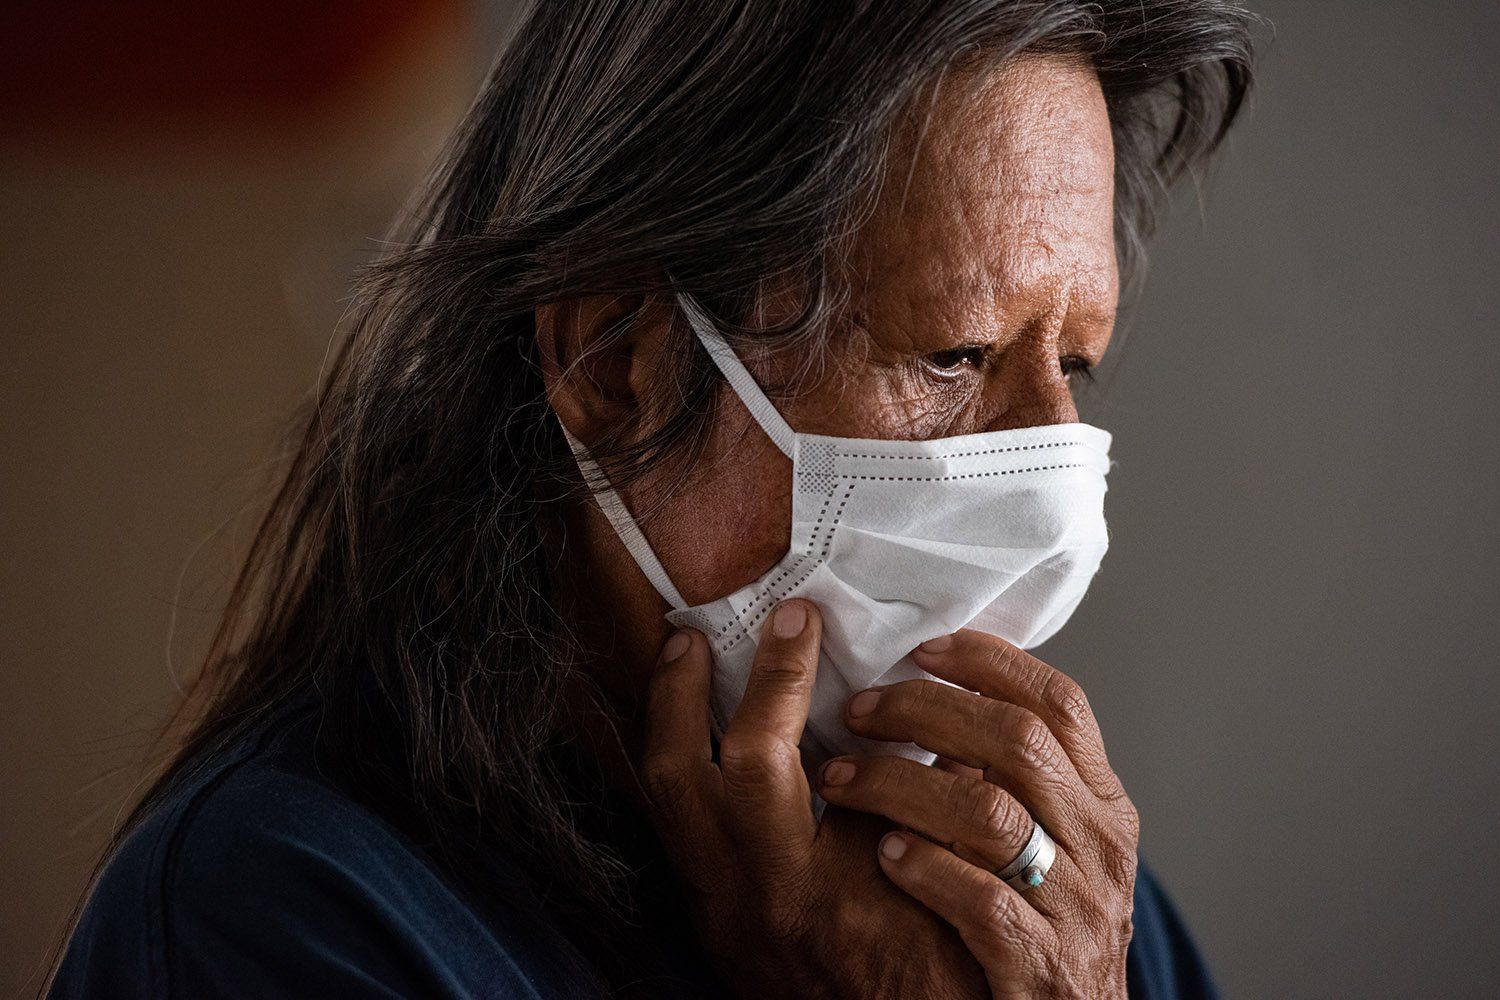 Brenda Beyal, a member of the Navajo Nation, adjusts her mask while quarantining at the Howard Johnson motel